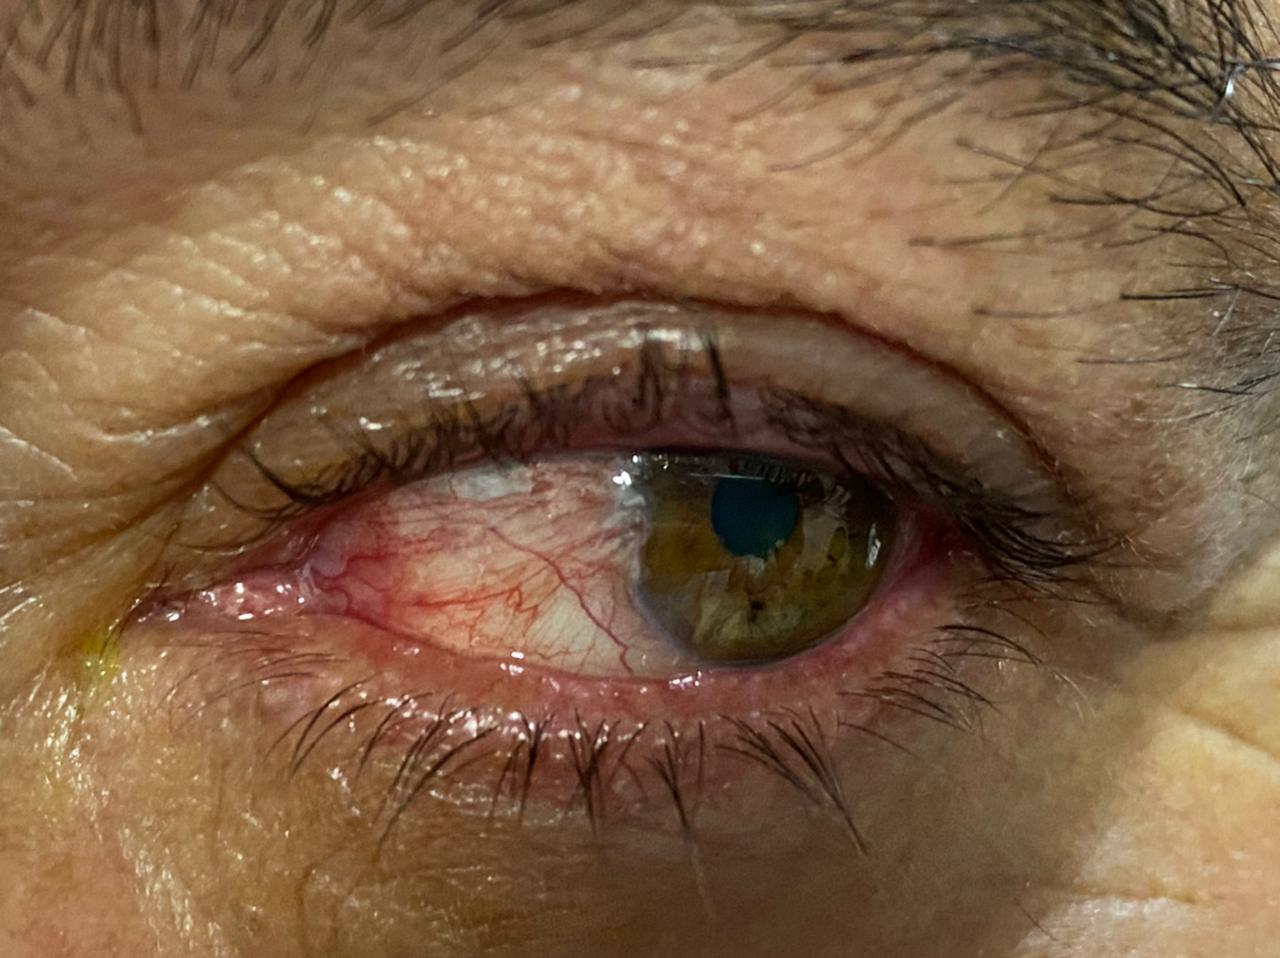 pterigi贸n Galer铆a enfermedades de los ojos Ojo humano / fotograf铆a de ojos / cuidar los ojos